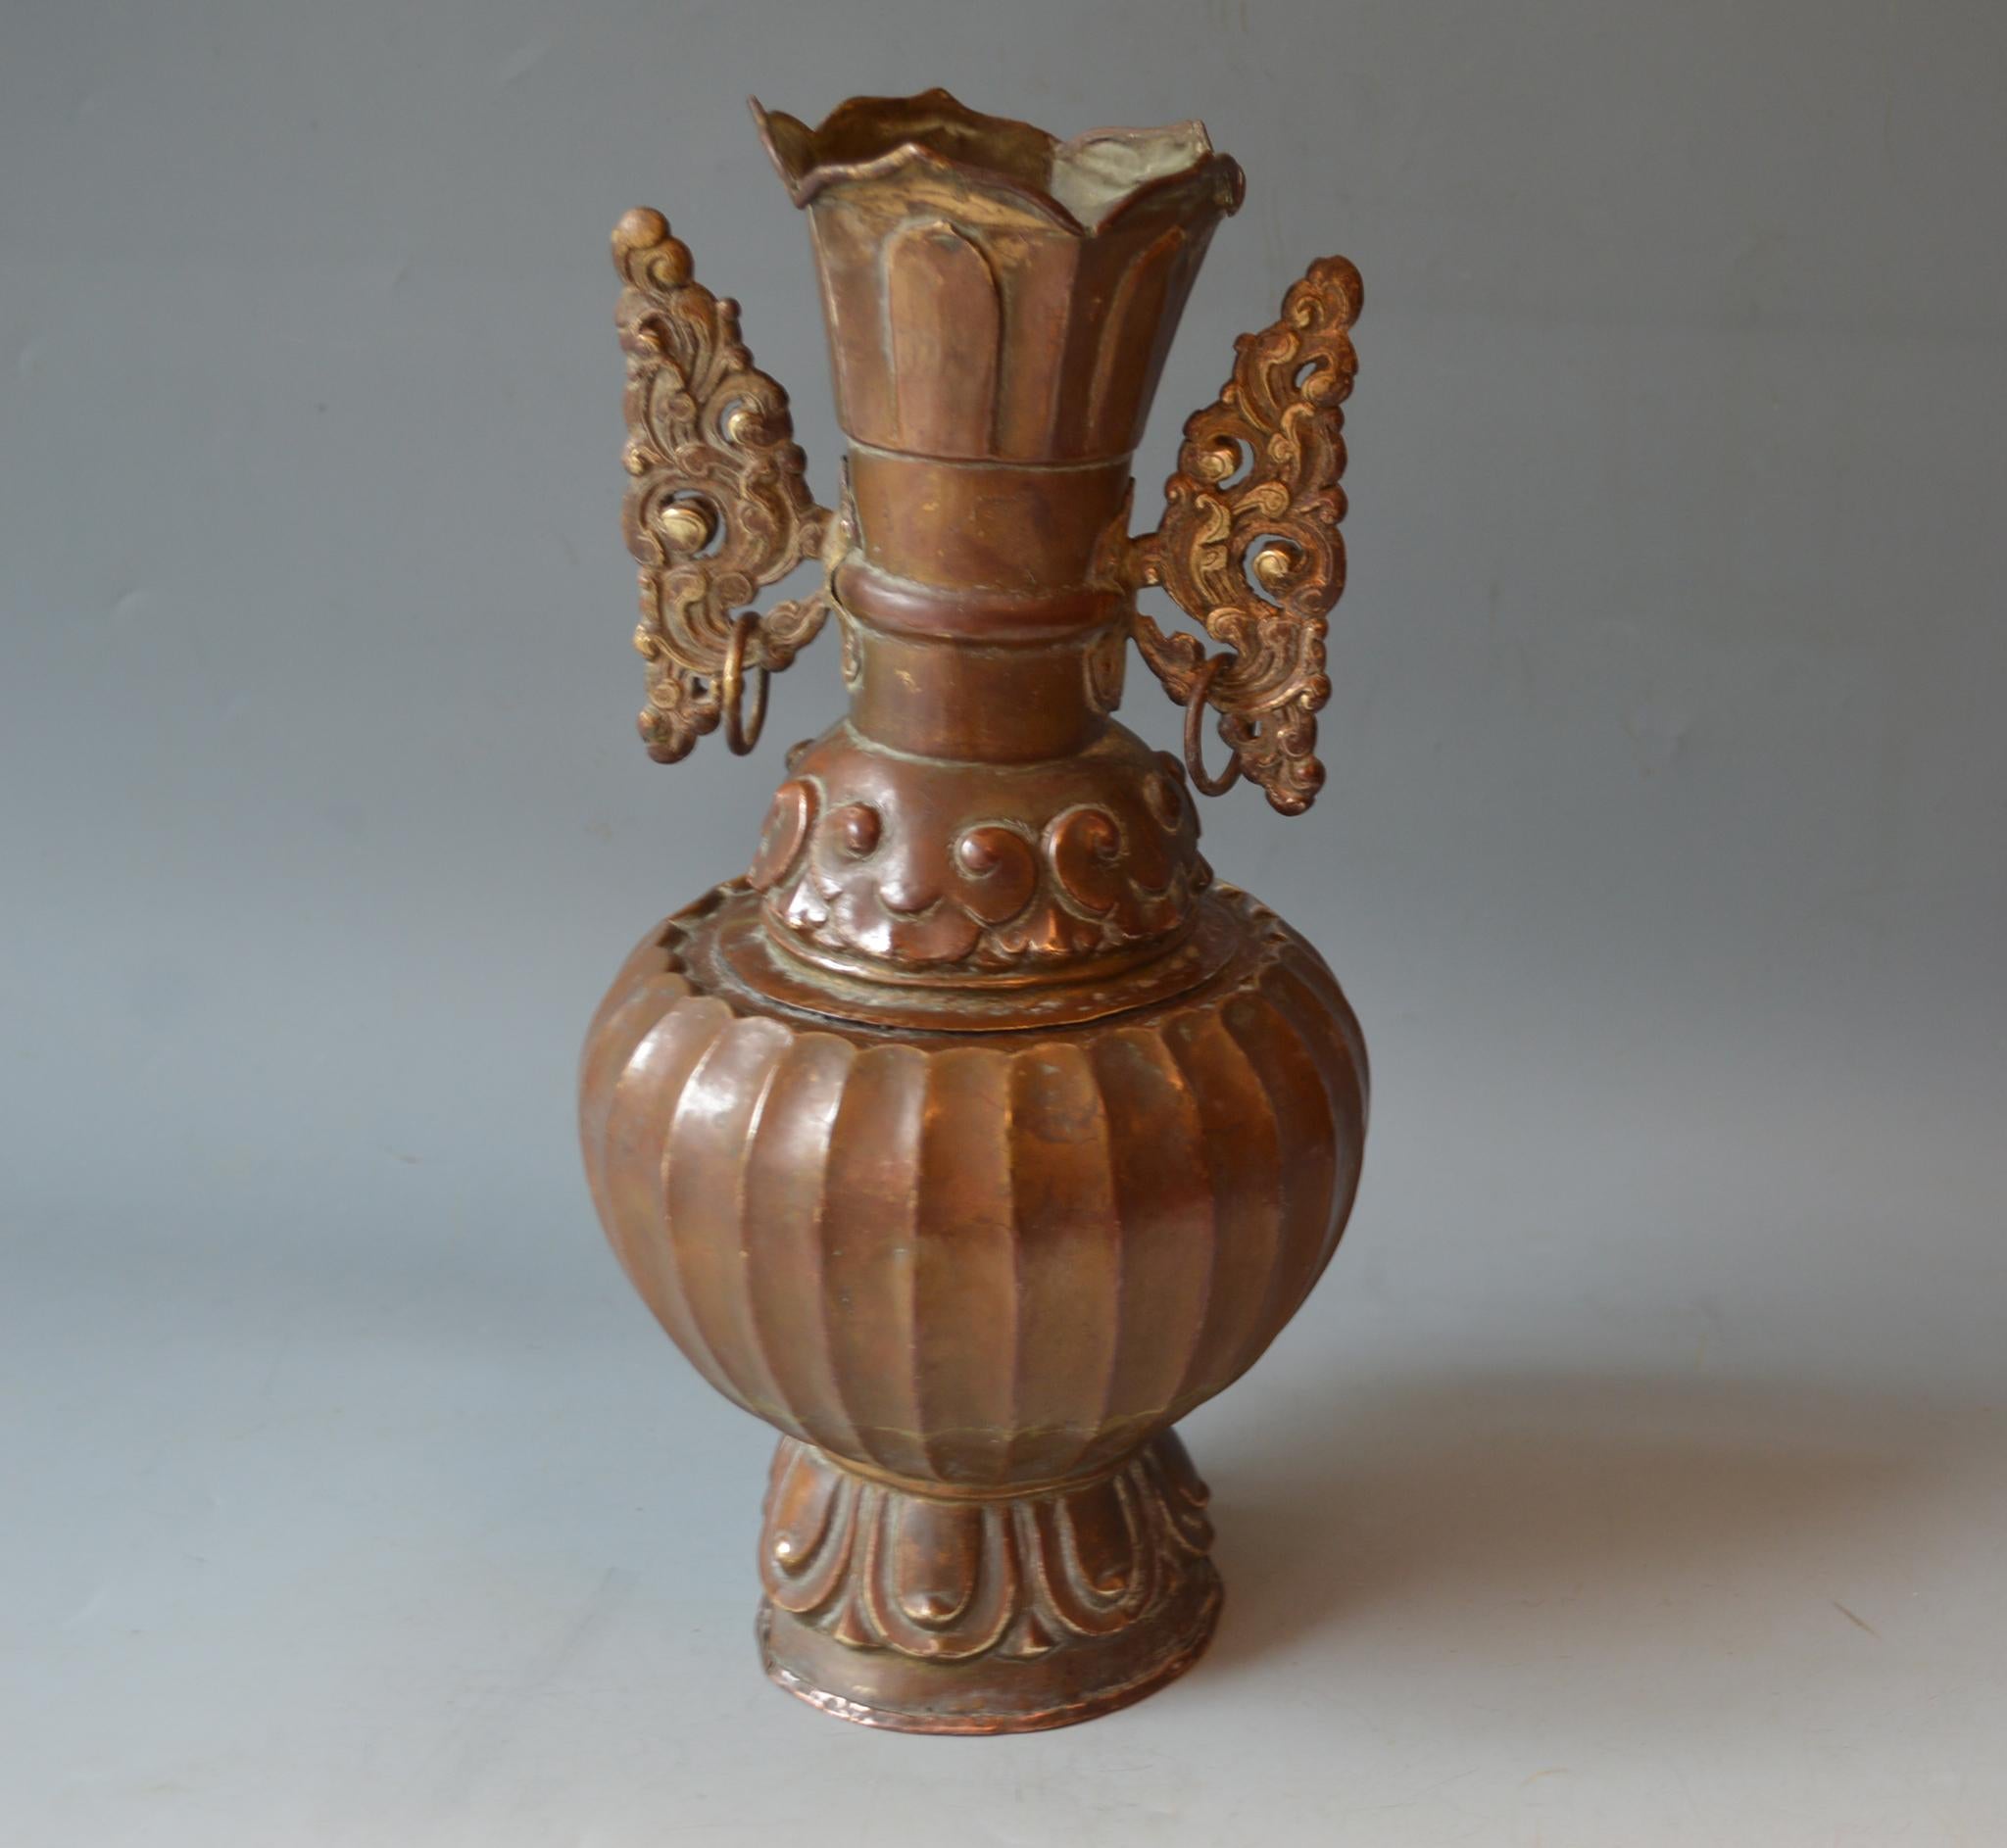  
Eine feine antike mongolische buddhistische Vase aus Kupfer mit Messingdekoration mit beweglichem runden Aufsatz

Zeitraum 19. Jahrhundert
Condit: Leichte Schäden am Sockel